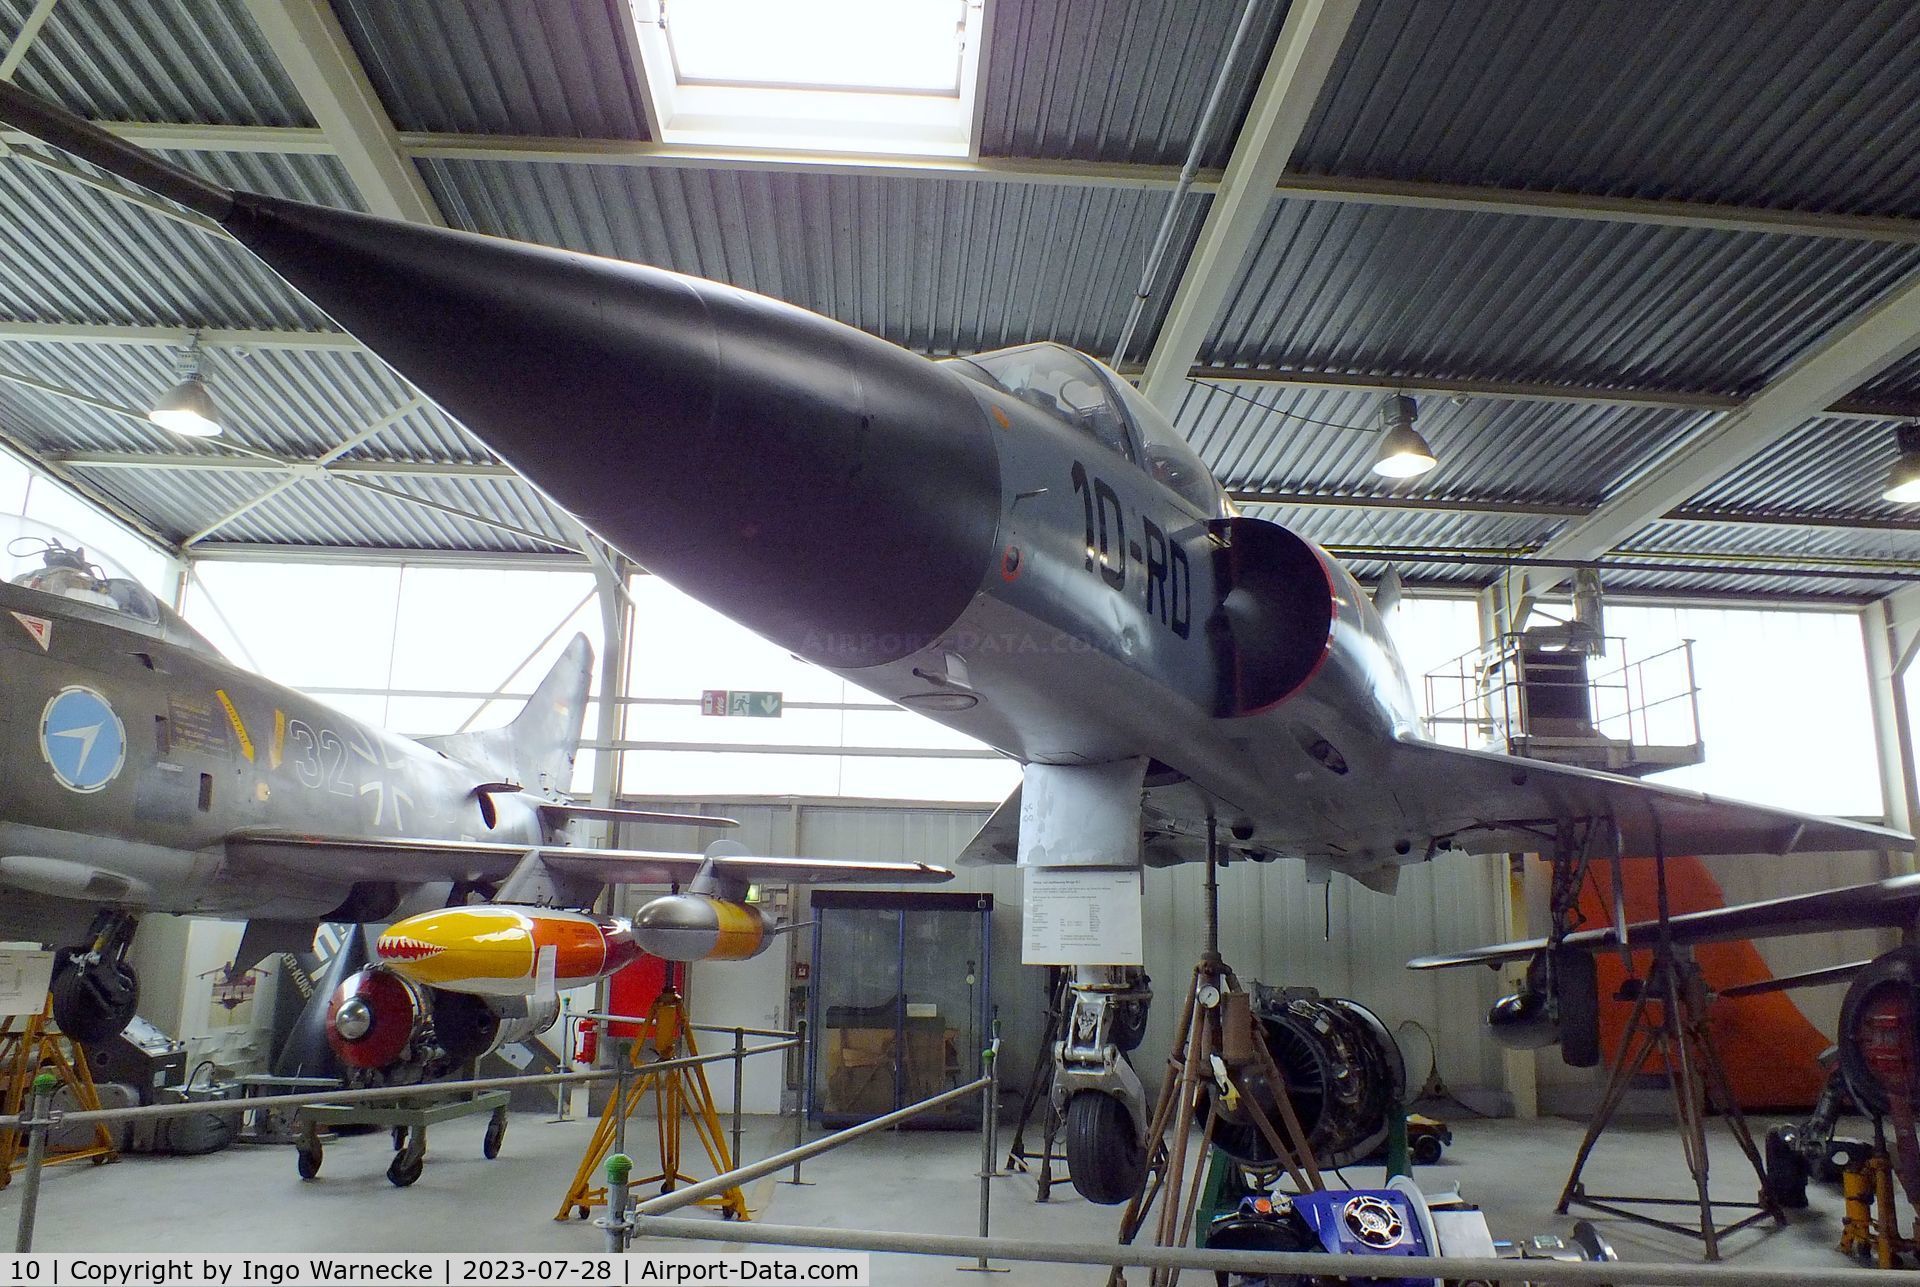 10, Dassault Mirage IIIC C/N 10, Dassault Mirage III C at the Wehrtechnische Studiensammlung (WTS), Koblenz